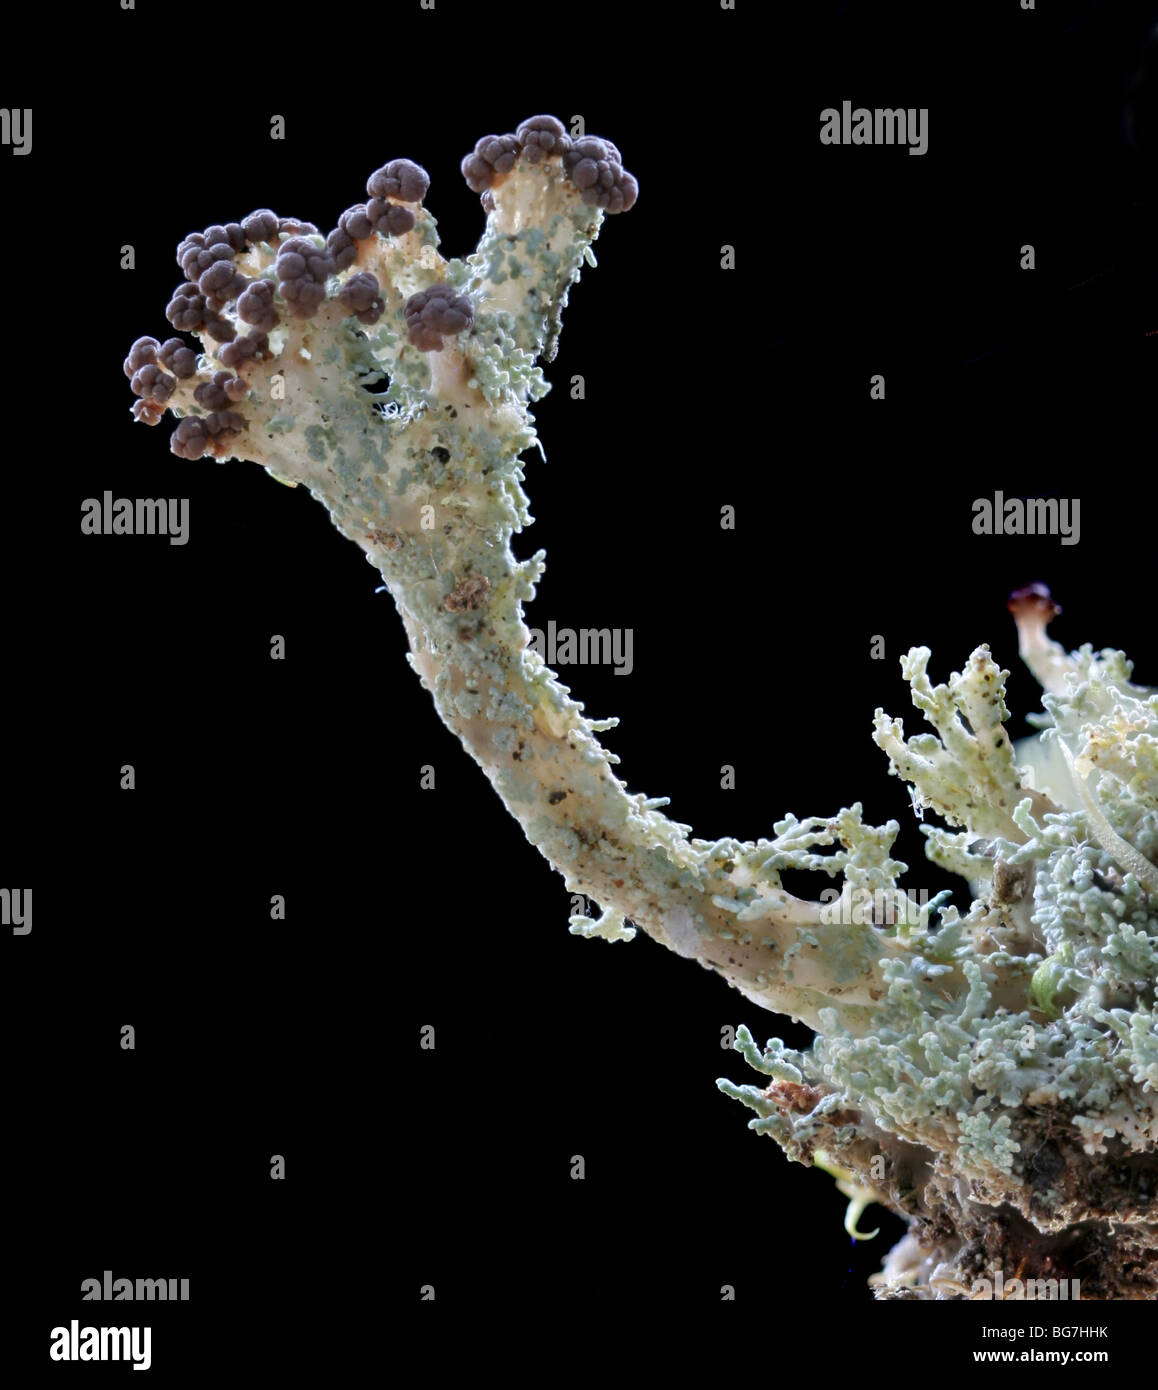 Fruticose lichen, Cladonia sp. Stock Photo